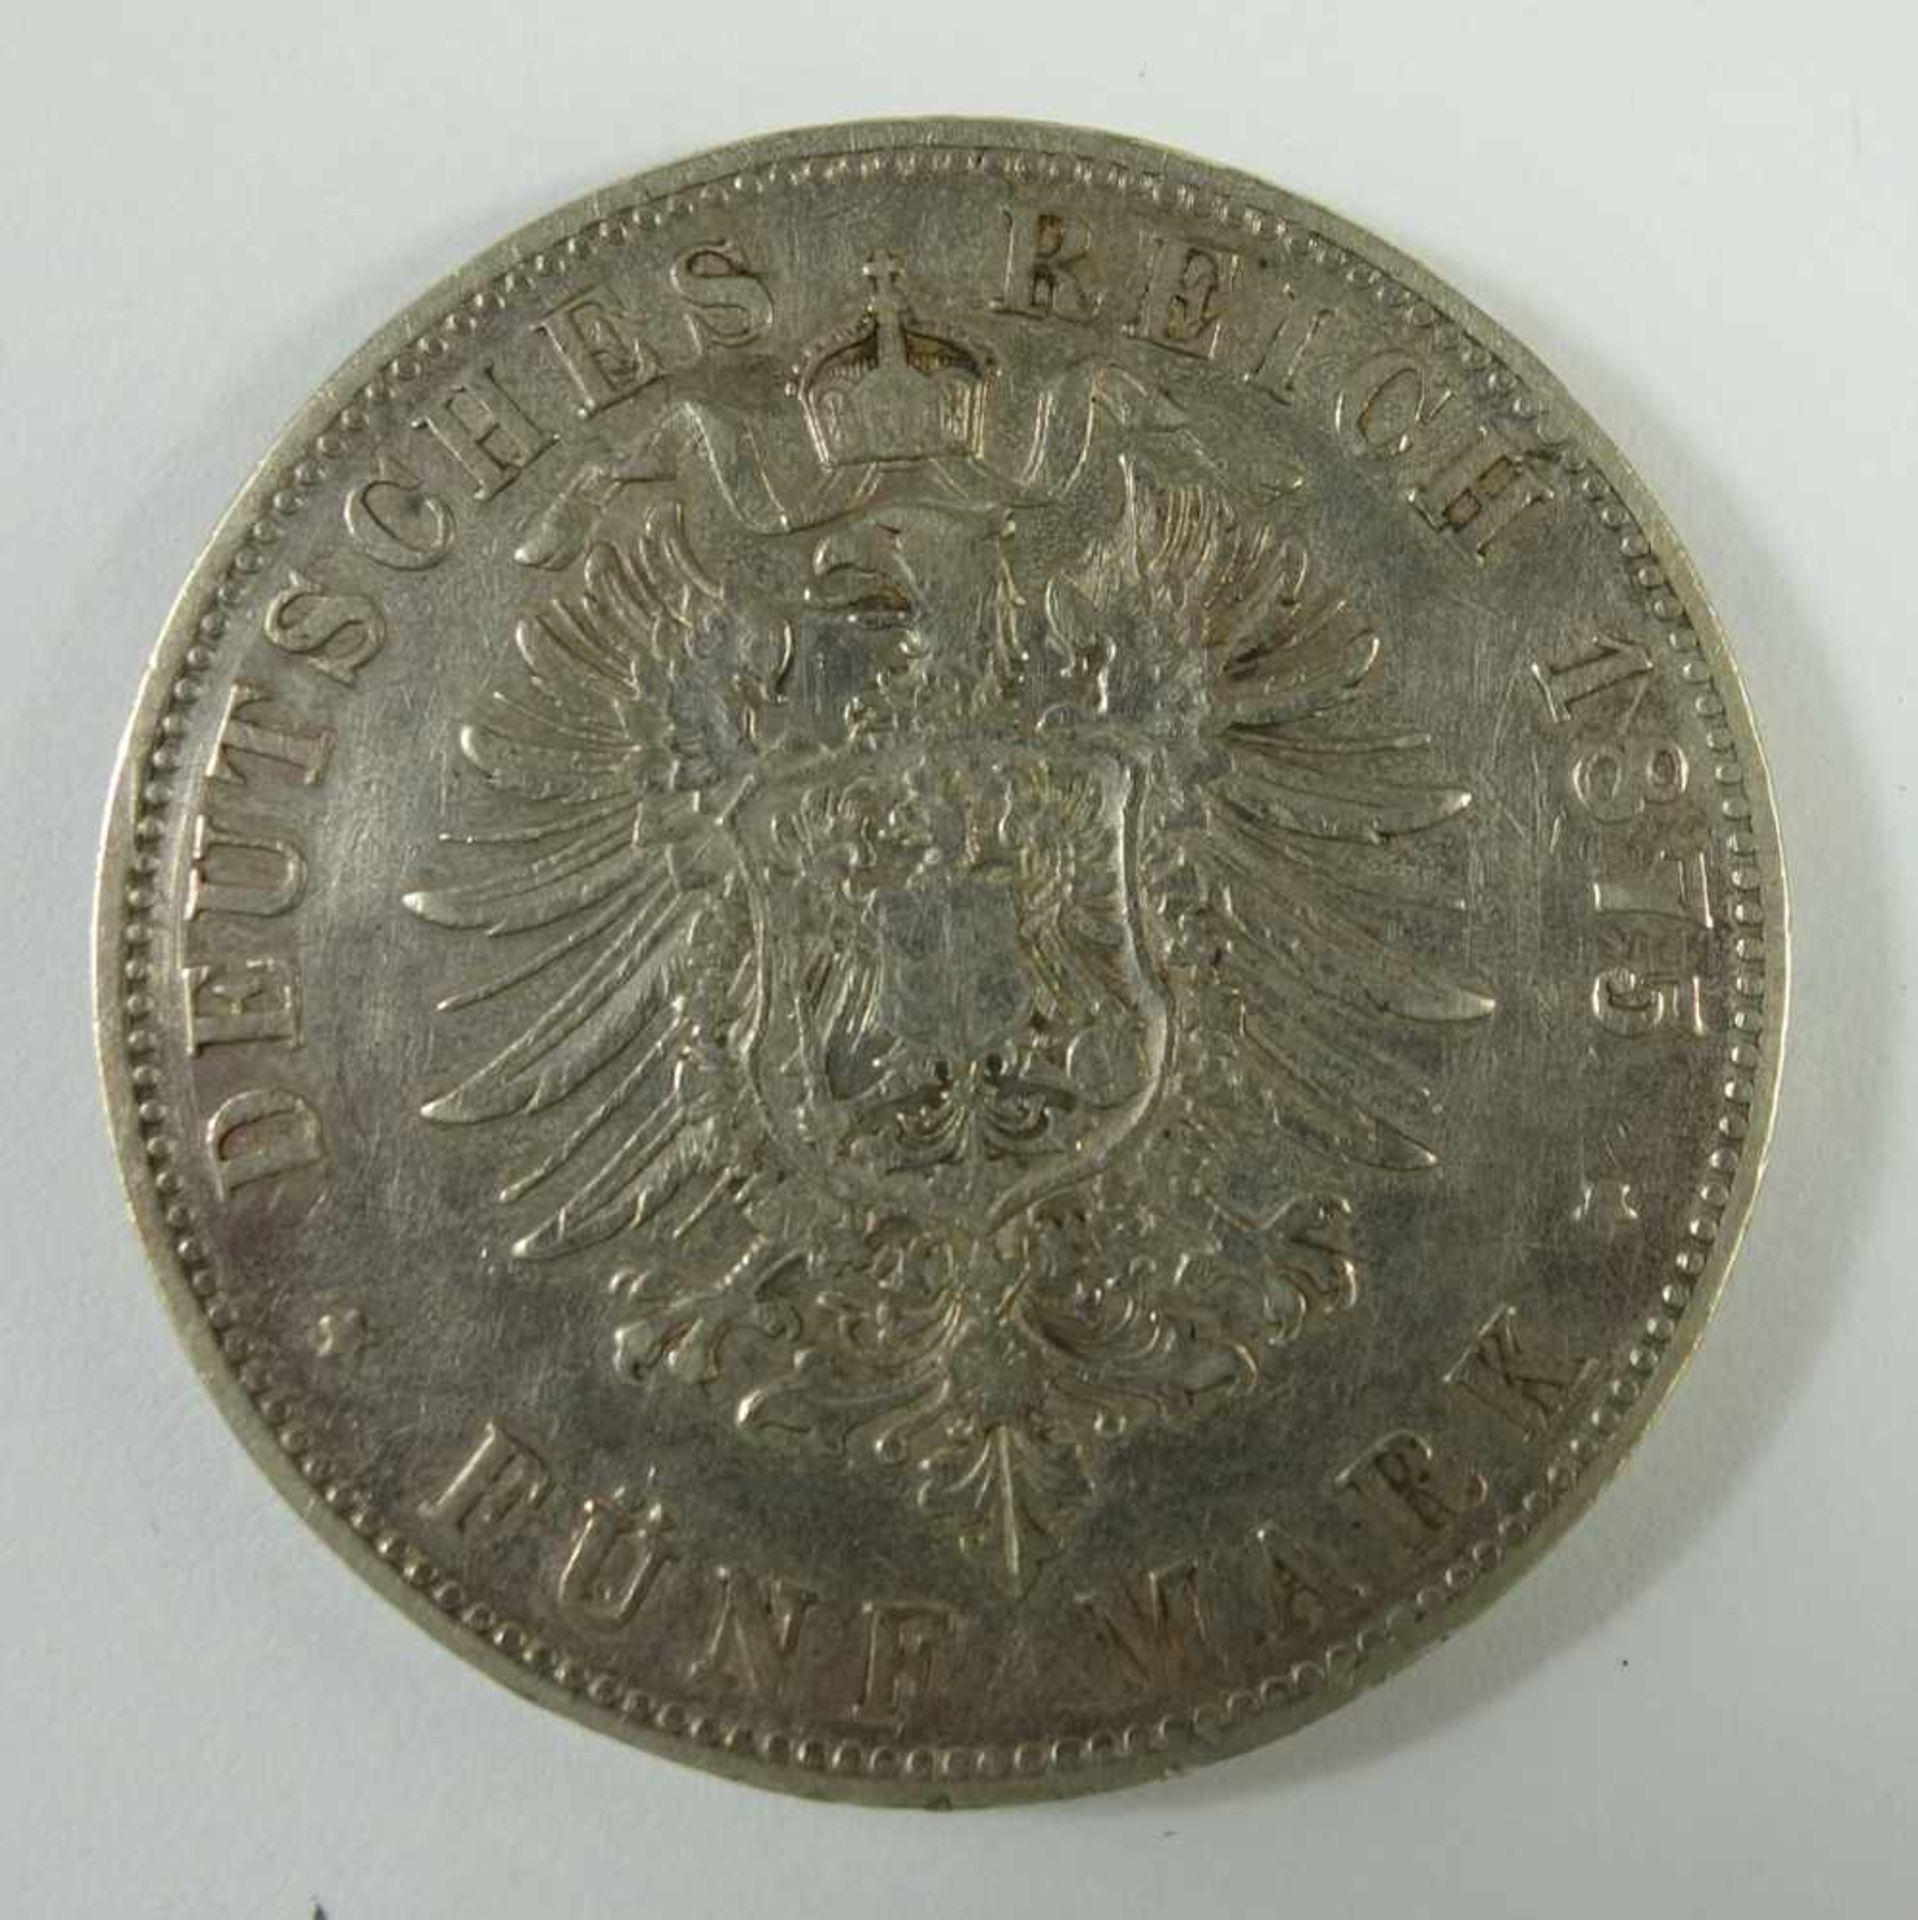 5 Mark 1875, G, "Friedrich Grosherzog von Baden", Kaiserreich, 900er Silber, Gew.27,56g, ss-vz- - - - Image 2 of 2